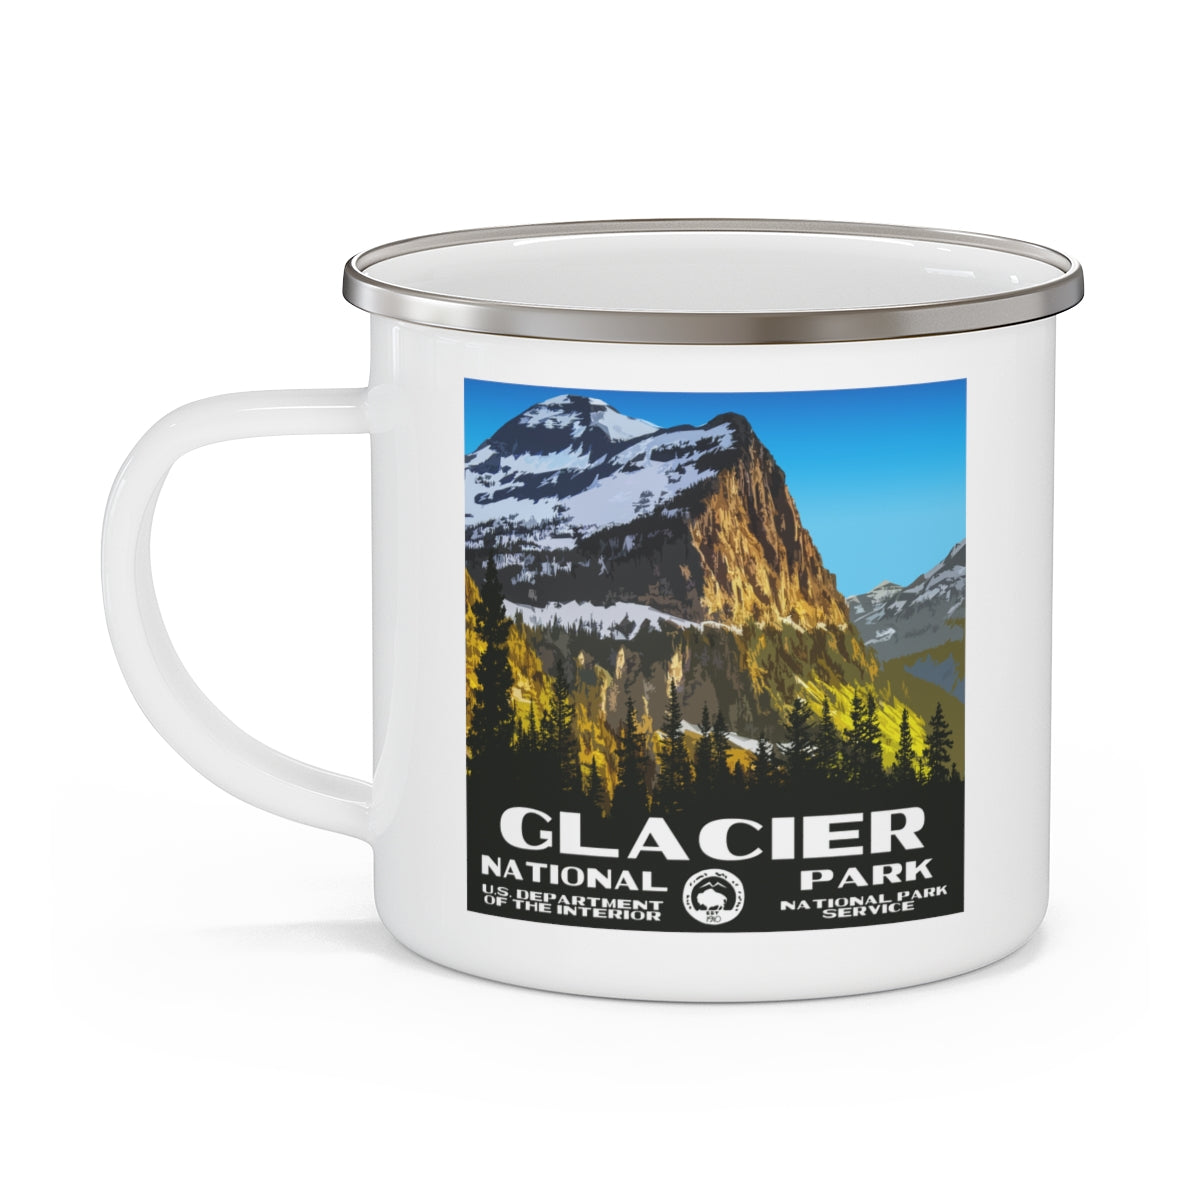 Glacier National Park Enamel Camping Mug